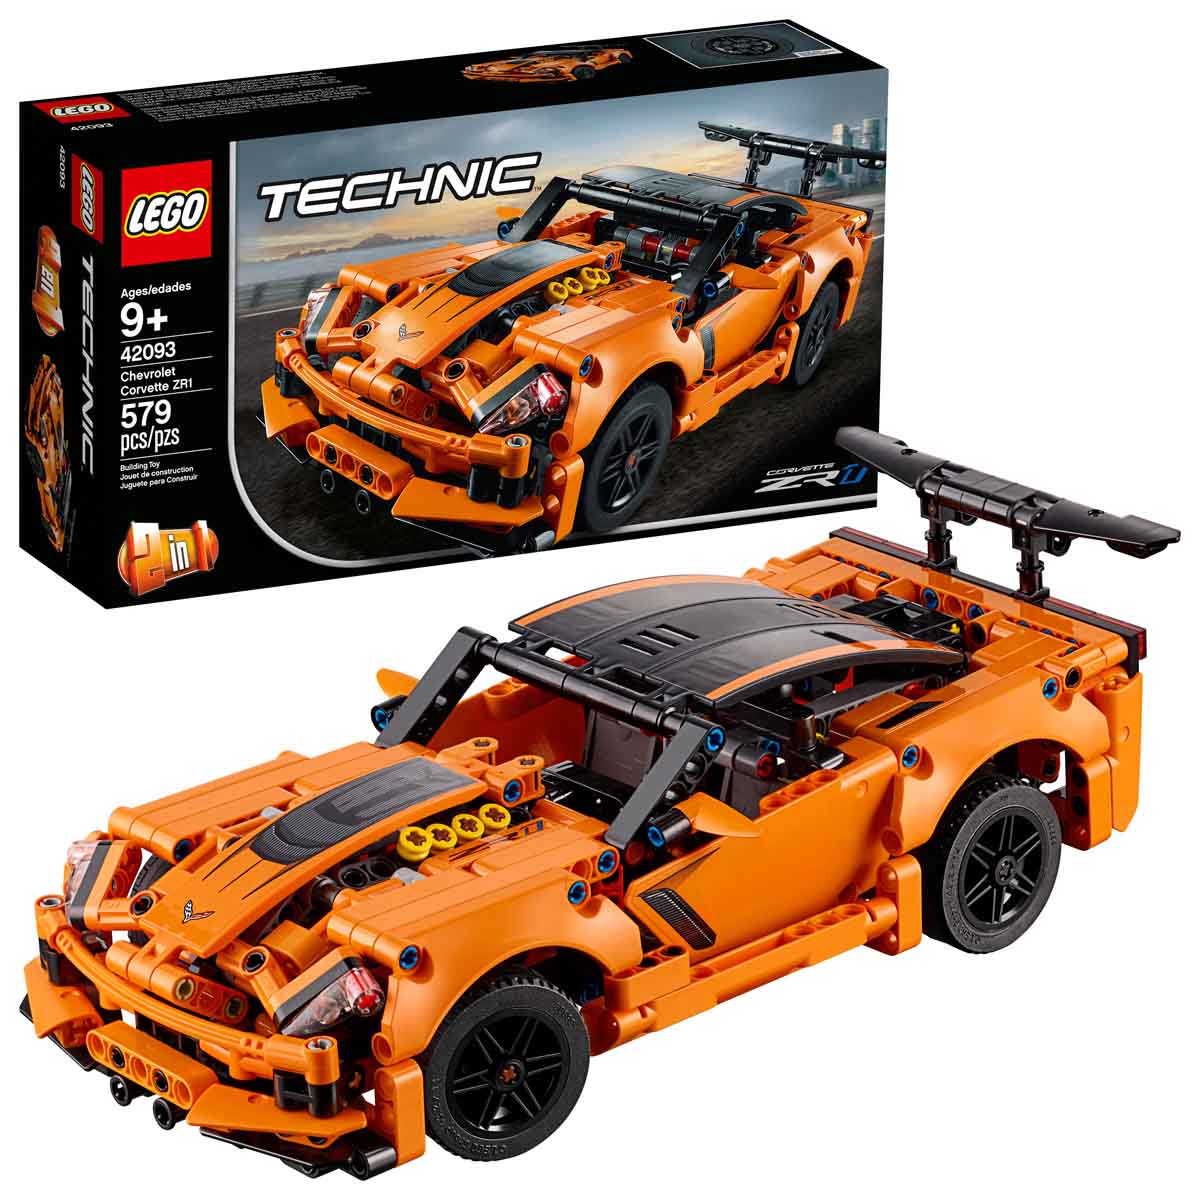 Köp LEGO Technic 42093 Chevrolet Corvette ZR1 på lekia.se